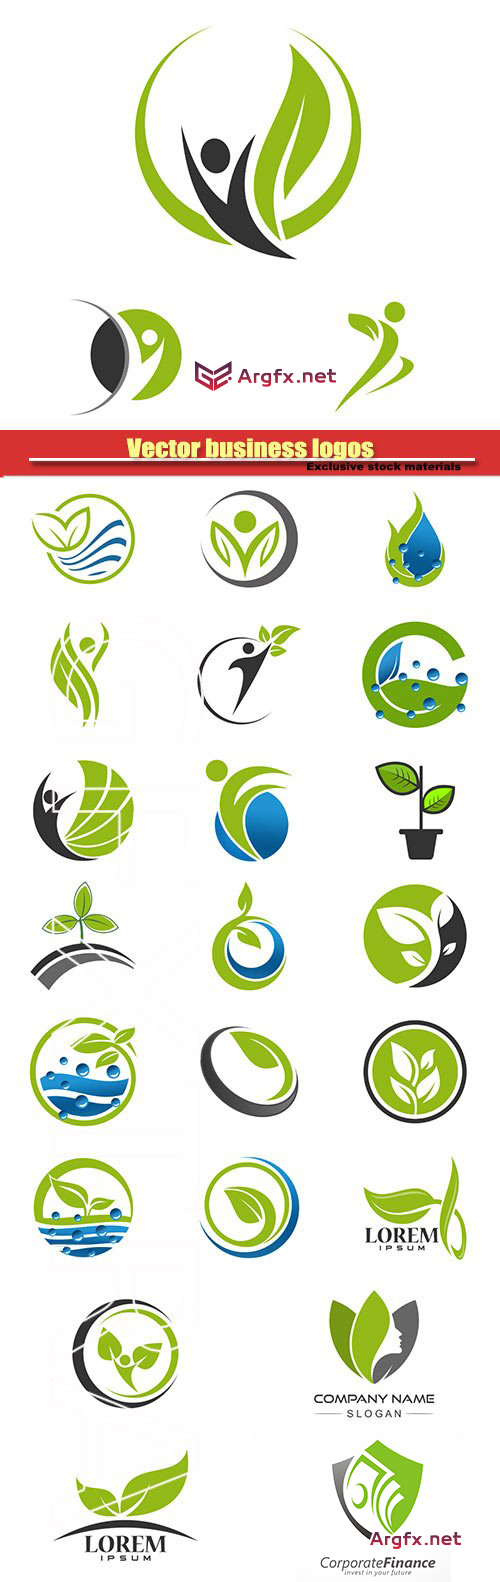  Vector business logos